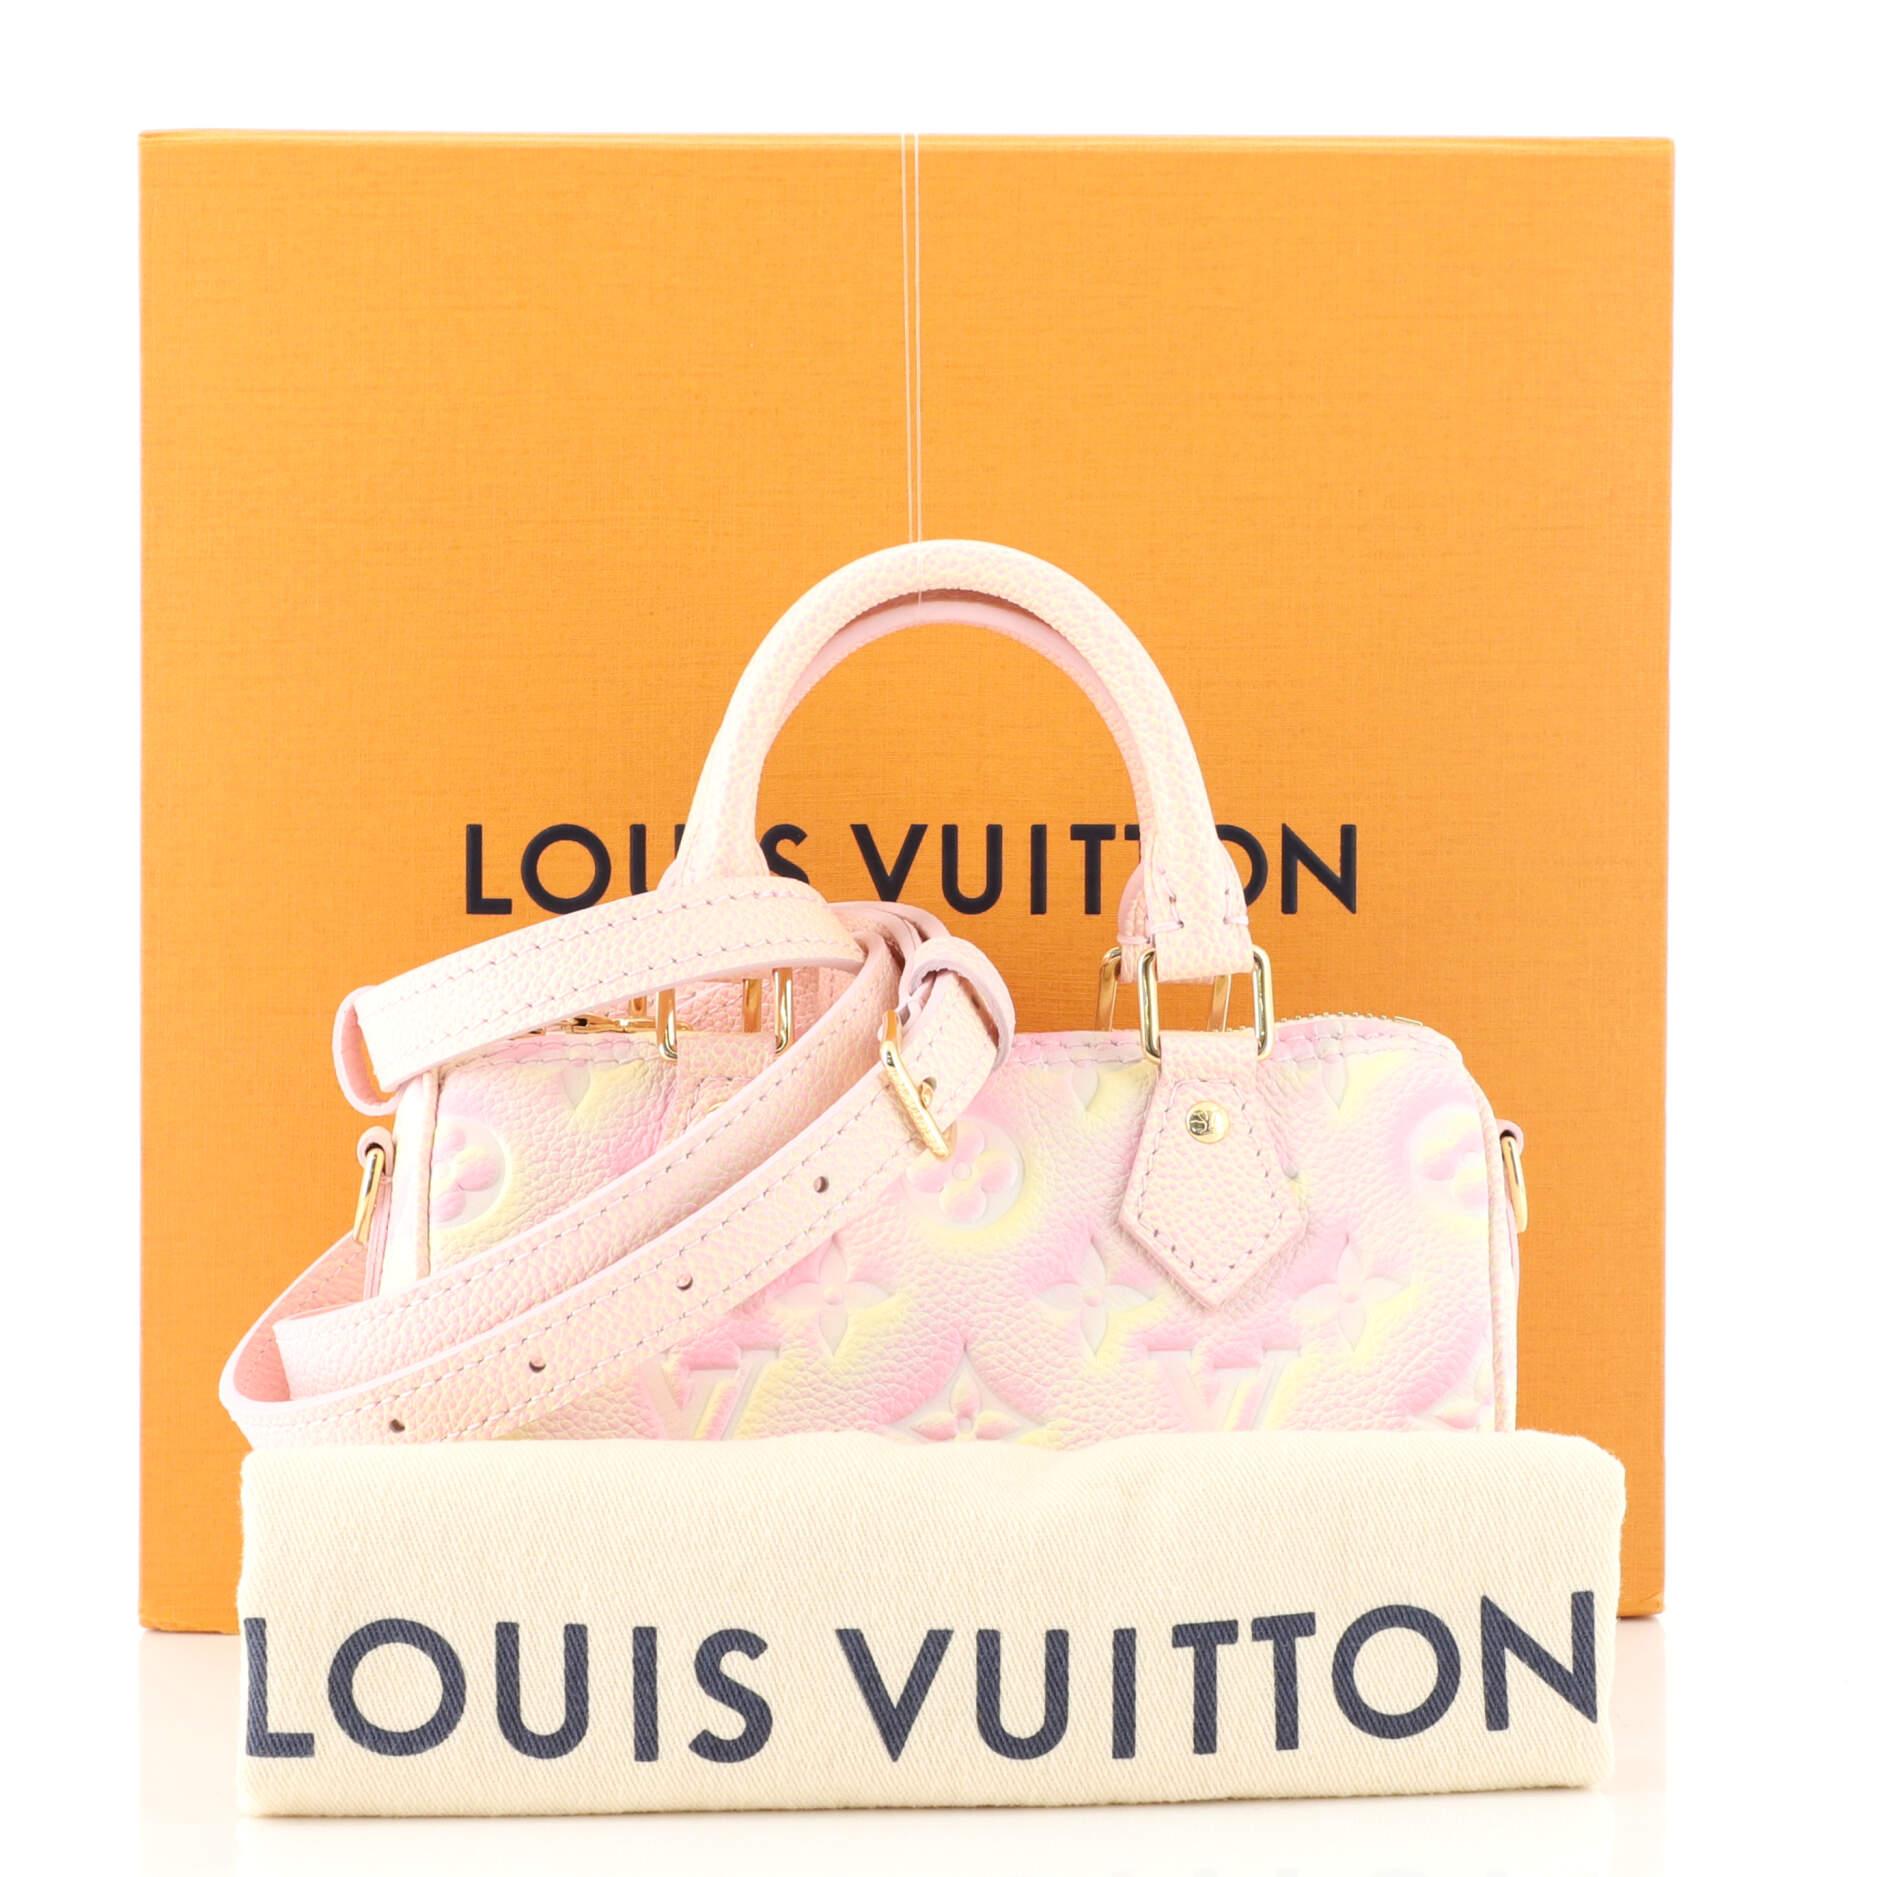 FWRD Renew Louis Vuitton Summer Stardust Monogram Nano Speedy Bag in Pink